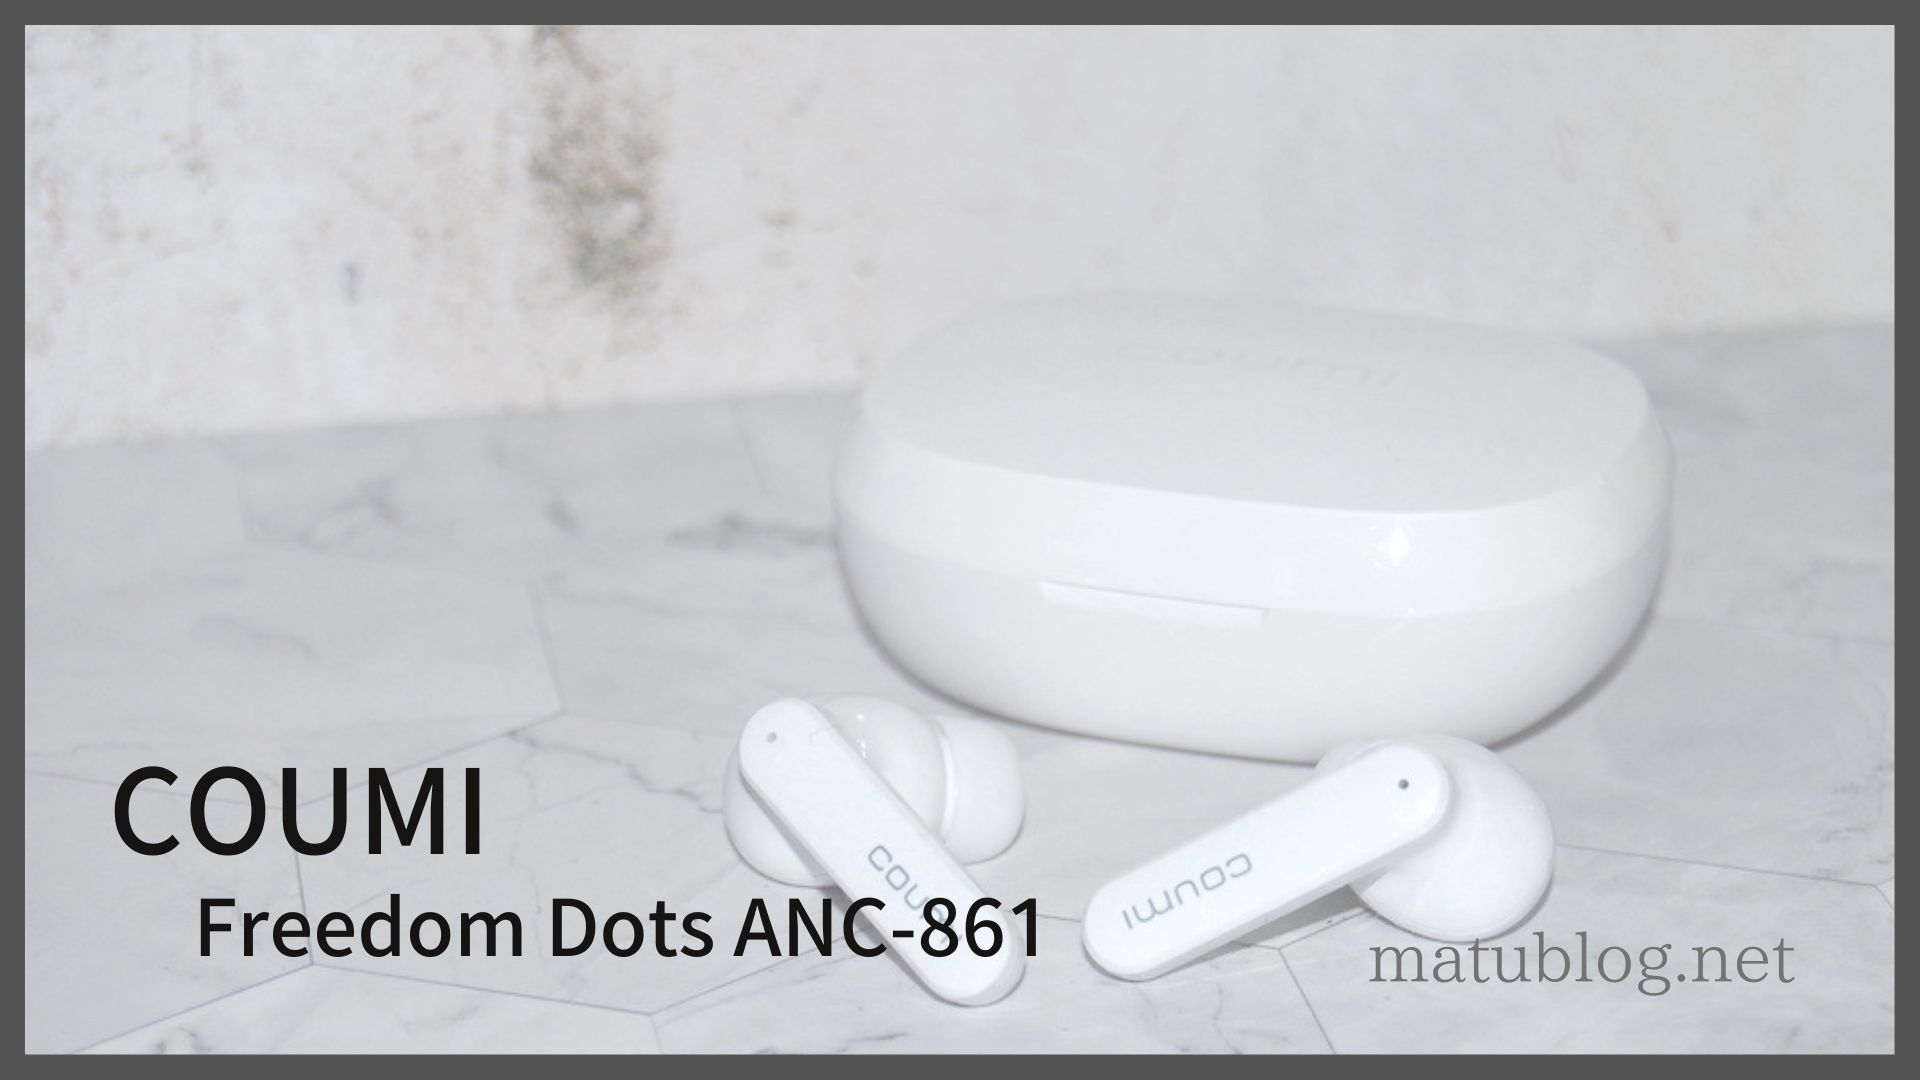 COUMI Freedom Dots ANC-861レビュー】4000円以下でANC対応の完全ワイヤレスイヤホン | matublog